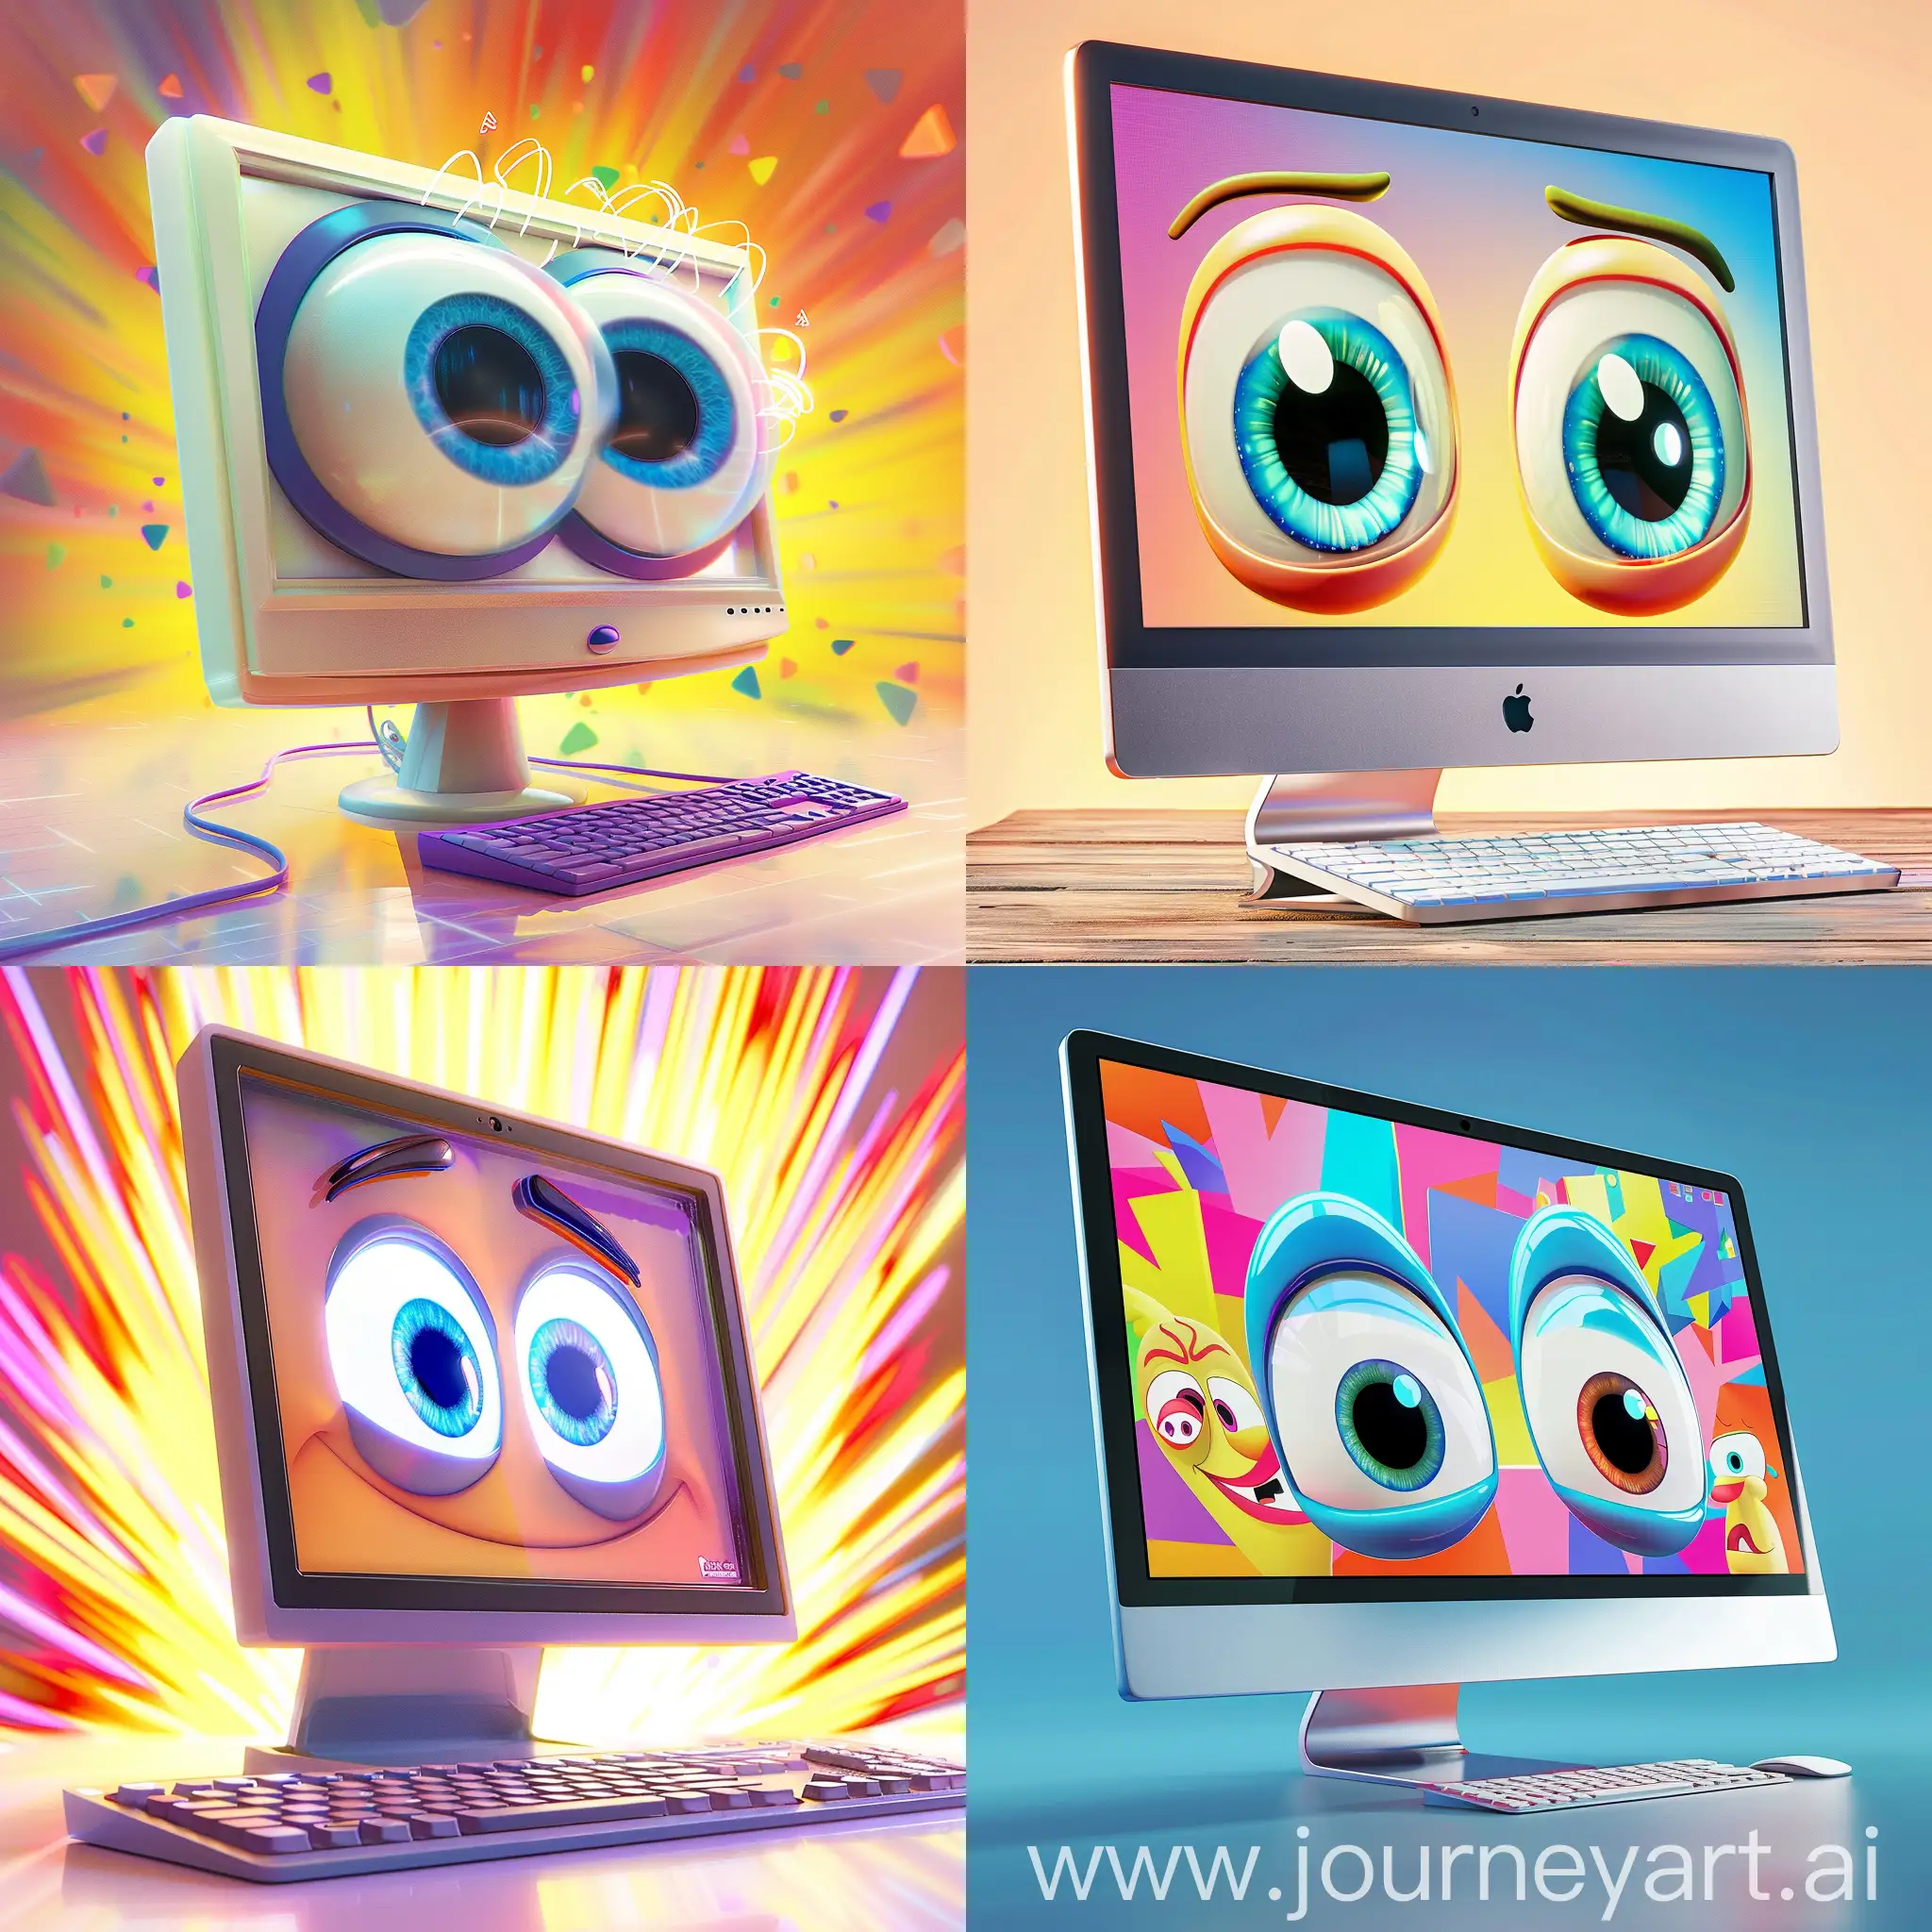 computer с большими глазами эмоциональный  вид сбоку 
симметричный анимация pixar на ярком фоне